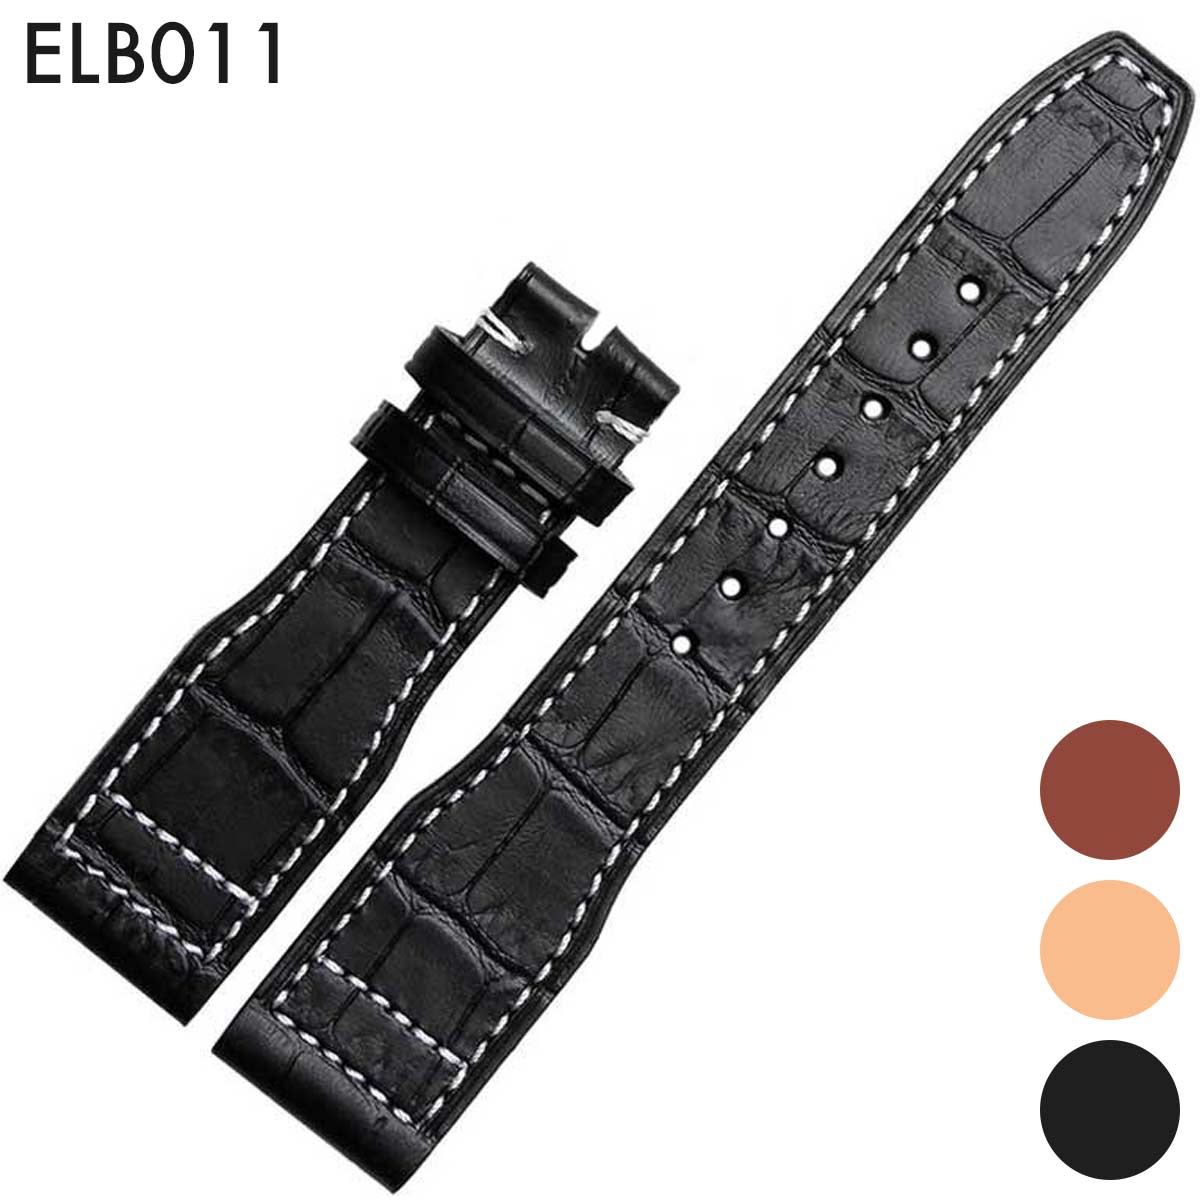 腕時計ベルト 腕時計バンド 替えストラップ 社外品 汎用レザーベルト 革ベルト 取付幅22mm 適用: IWC インターナショナル ウォッチ カンパニー IW377701 MARK16 (尾錠)バックルなし Eight - ELB011